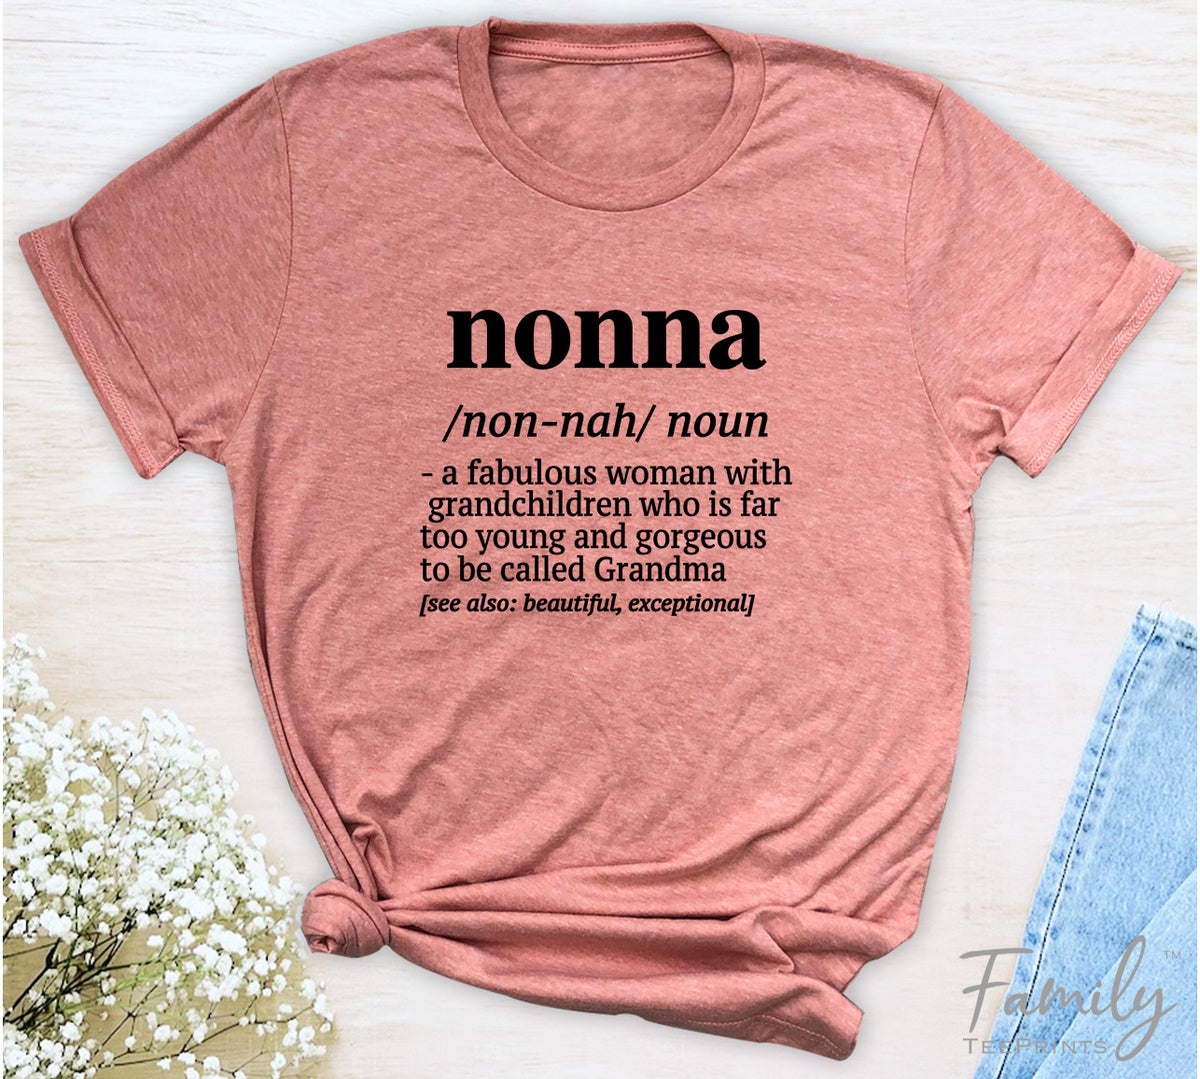 Nonna A Fabulous Woman With Grandchildren... - Unisex T-shirt - Nonna Shirt - Gift For Nonna